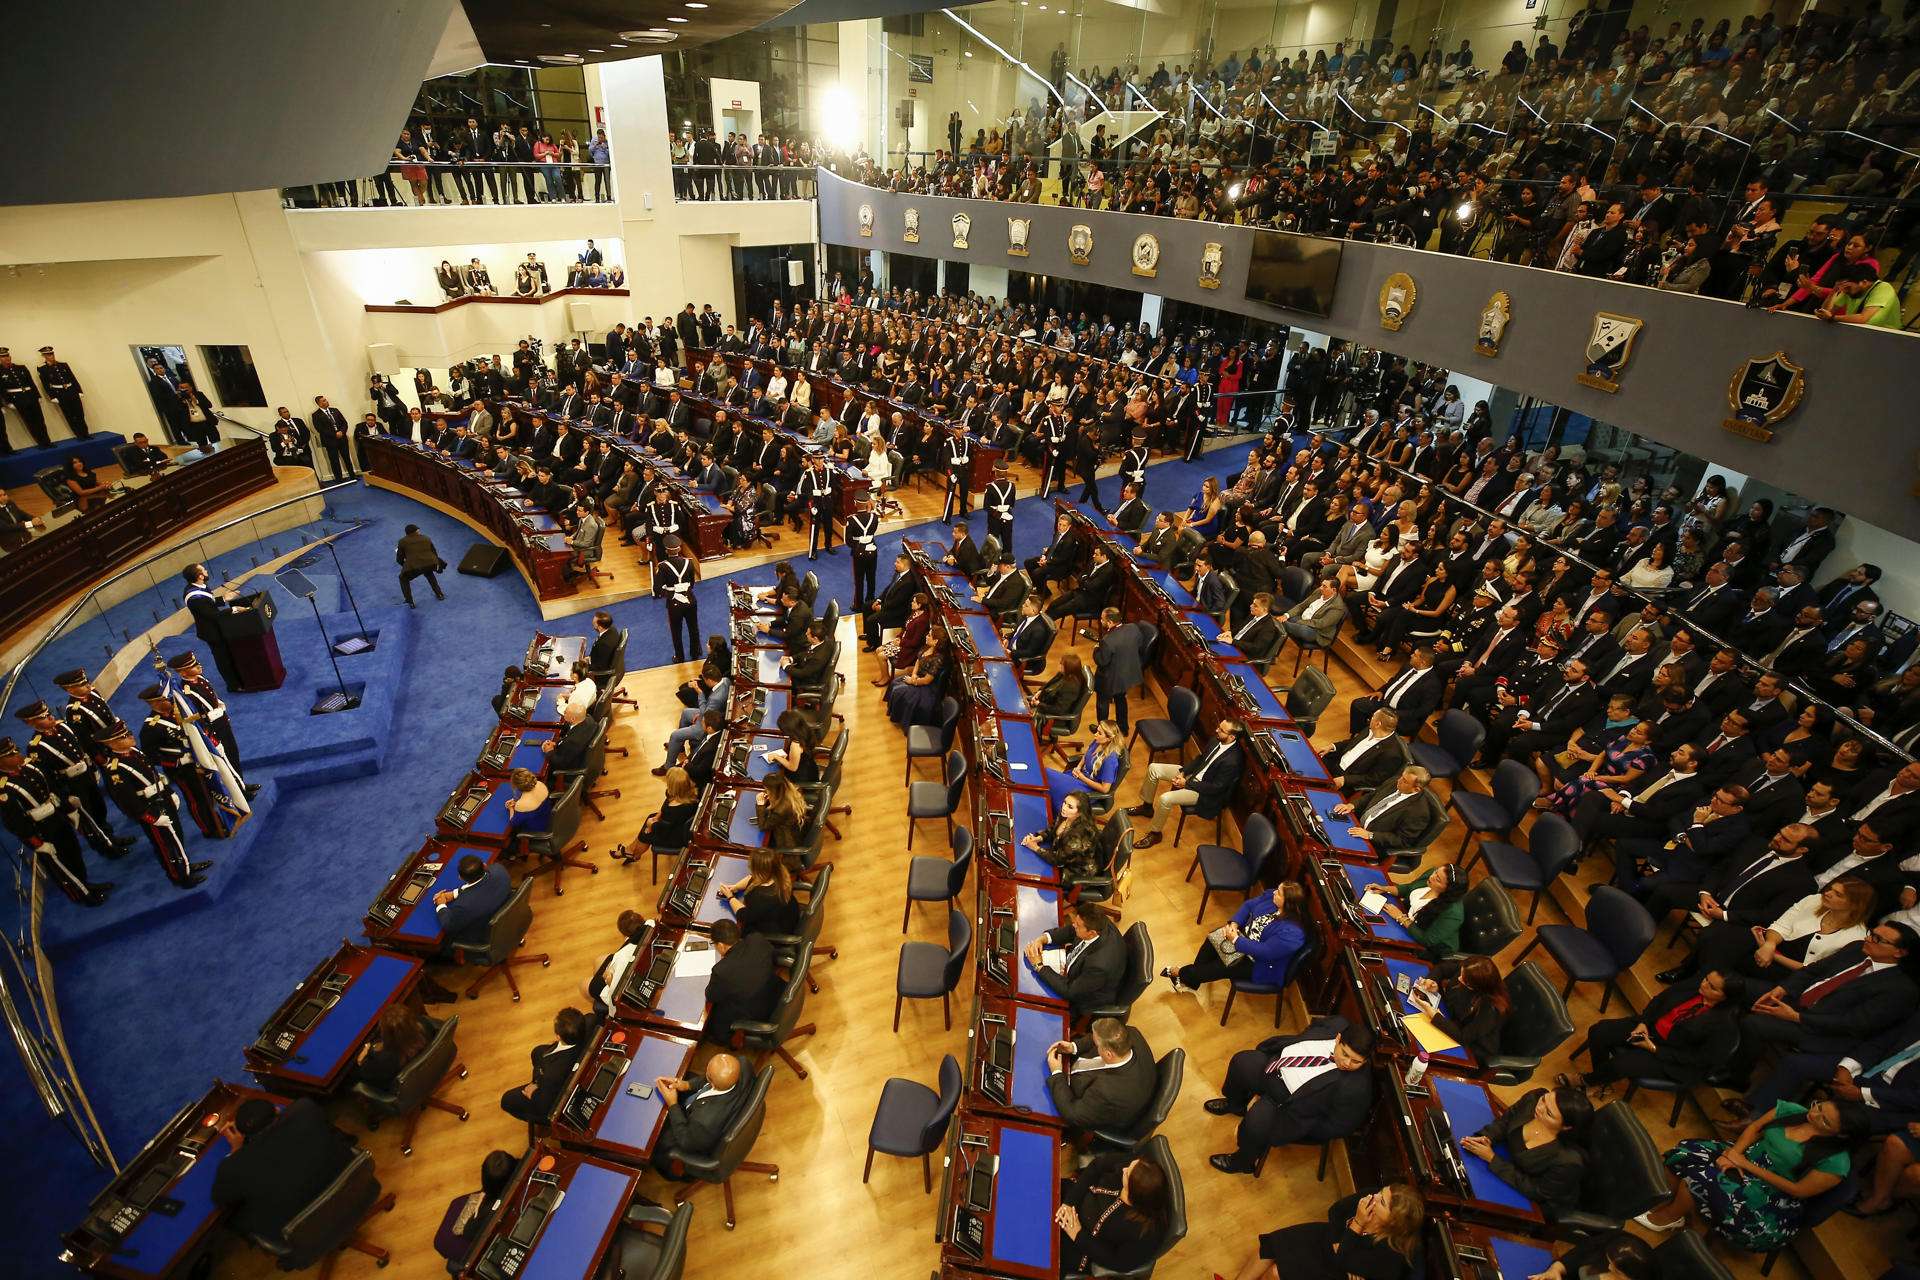 Vista general de una sesión del Congreso de El Salvador, en San Salvador (El Salvador), en una fotografía de archivo. EFE/Rodrigo Sura